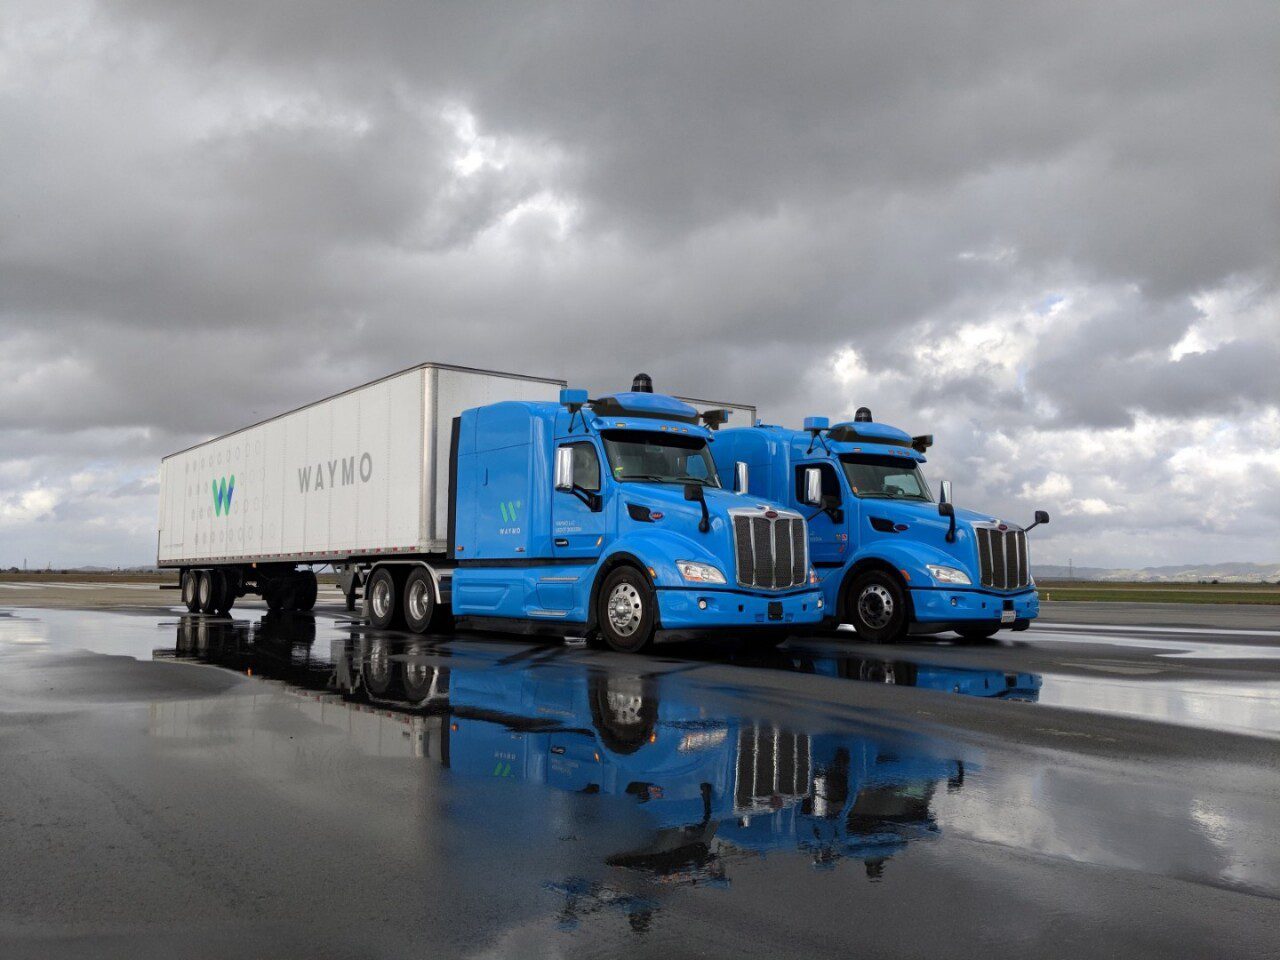 Future of Autonomous Trucks in Texas